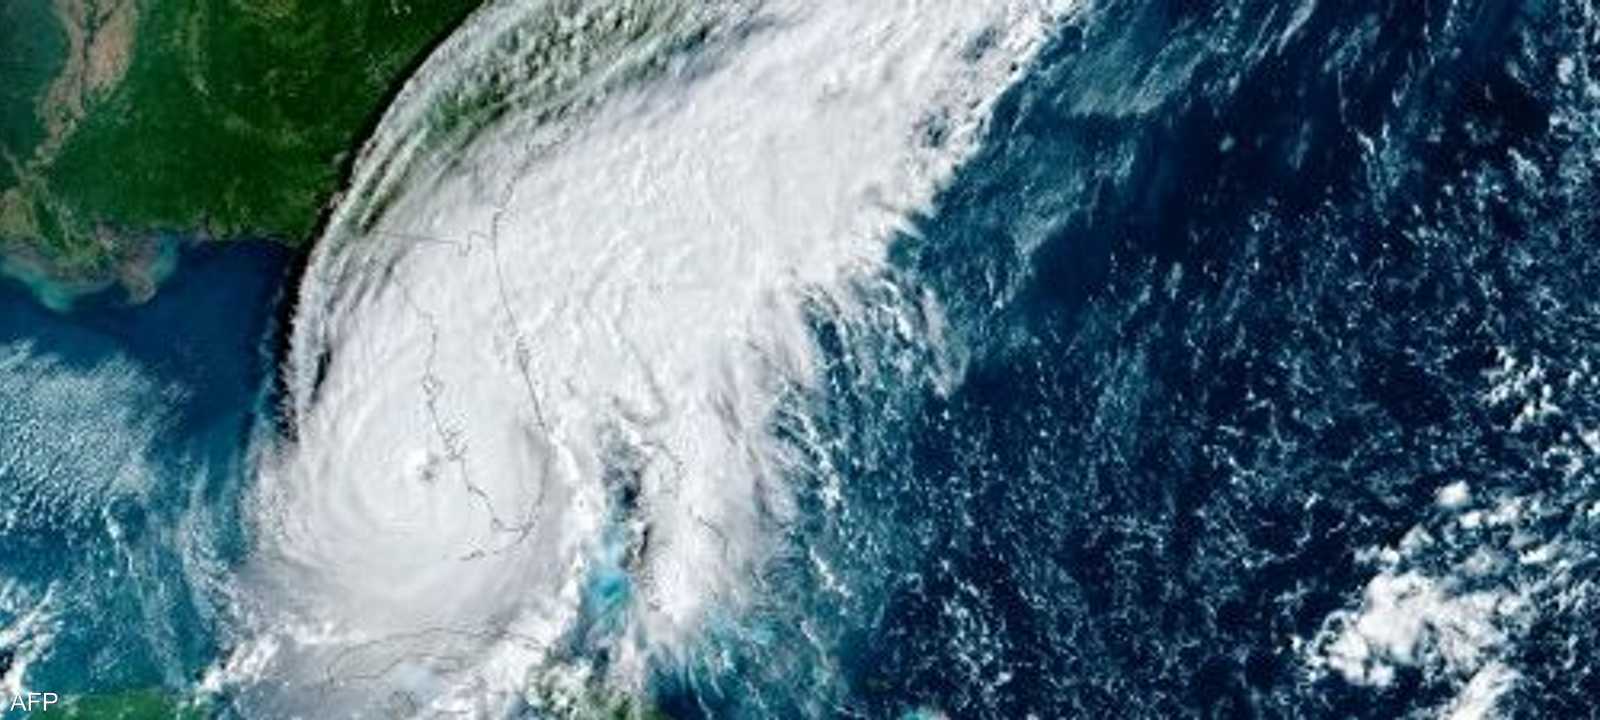 صورة فضائية لمسار الإعصار إيان مع وصوله لليابسة في فلوريدا